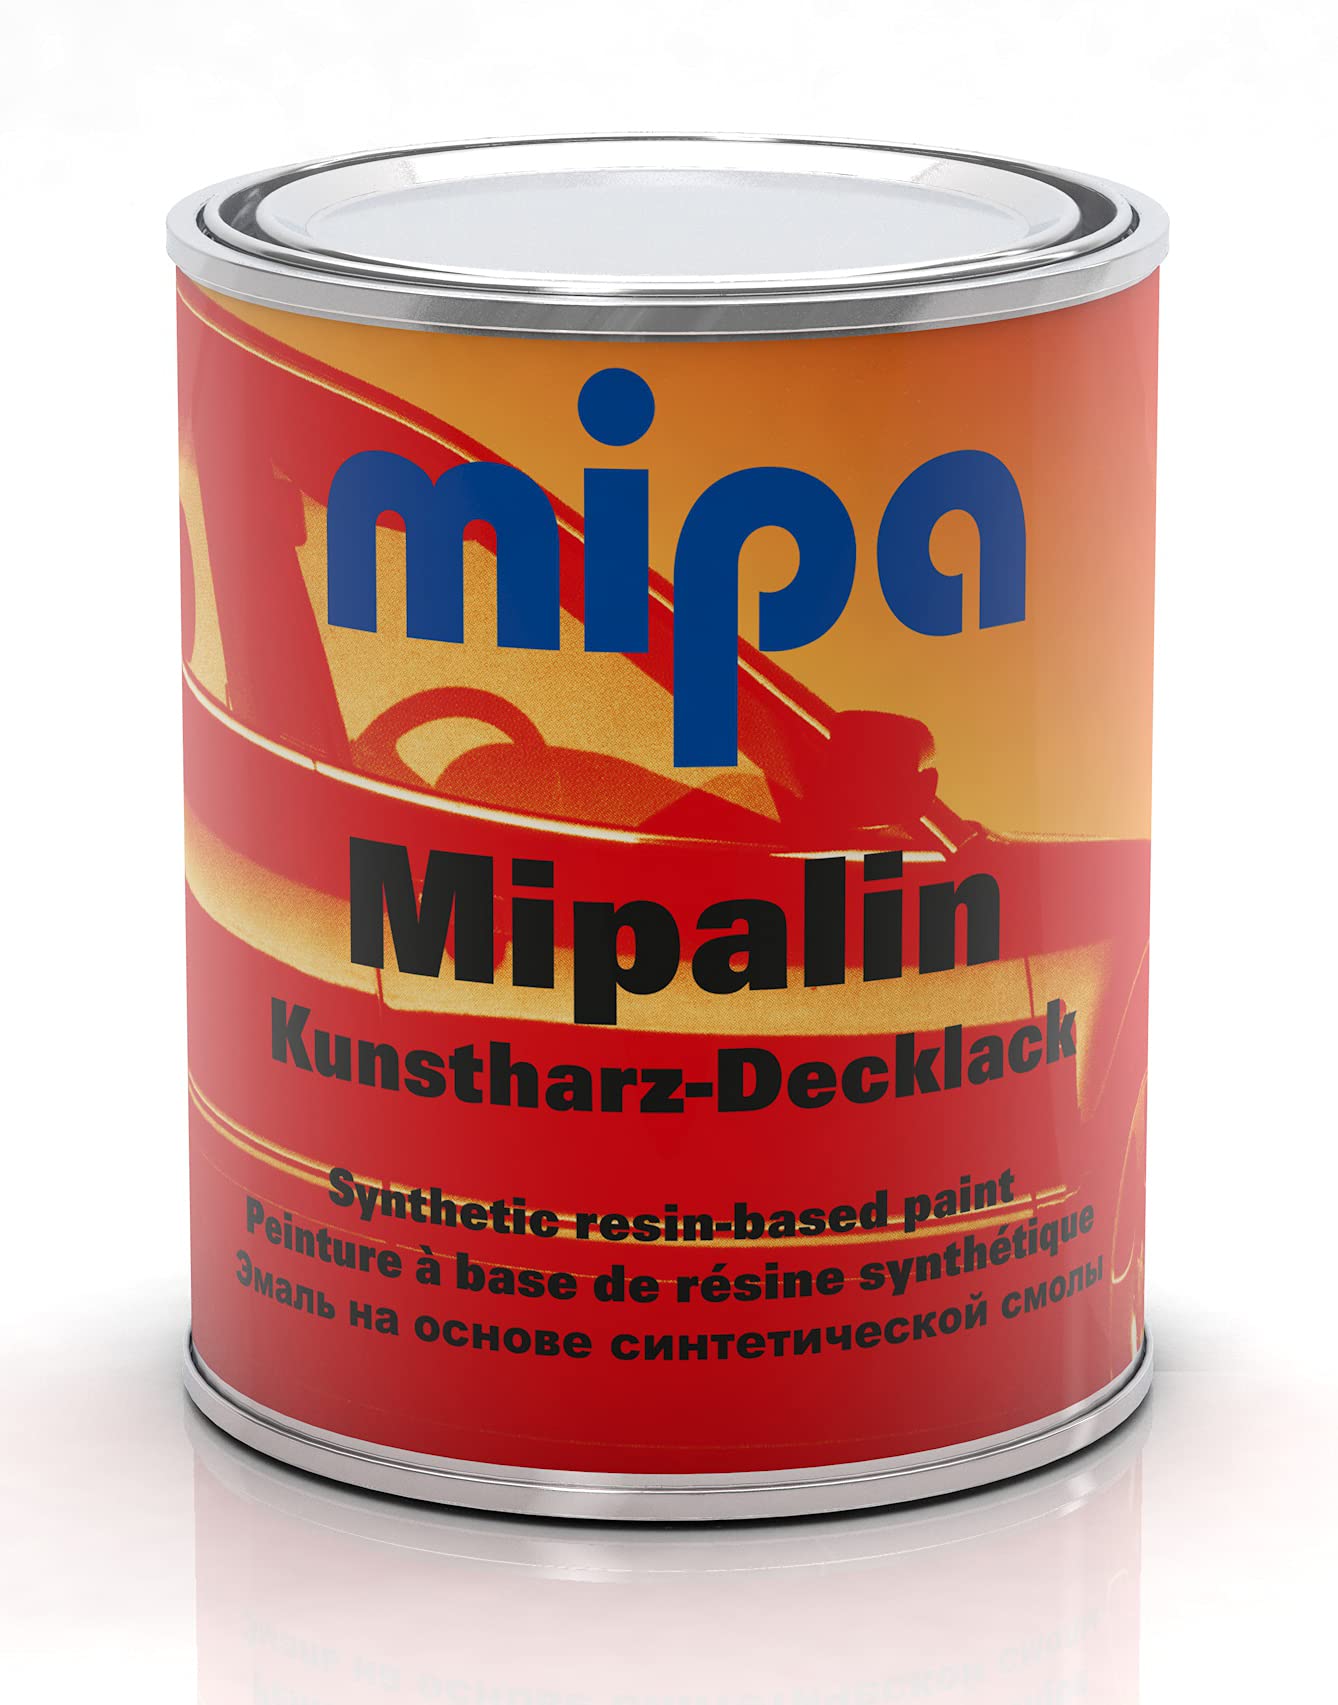 MIPA Mipalin Kunstharz Decklack RAL 2002 Blutorange 1 Liter Autolack Lack von MIPA